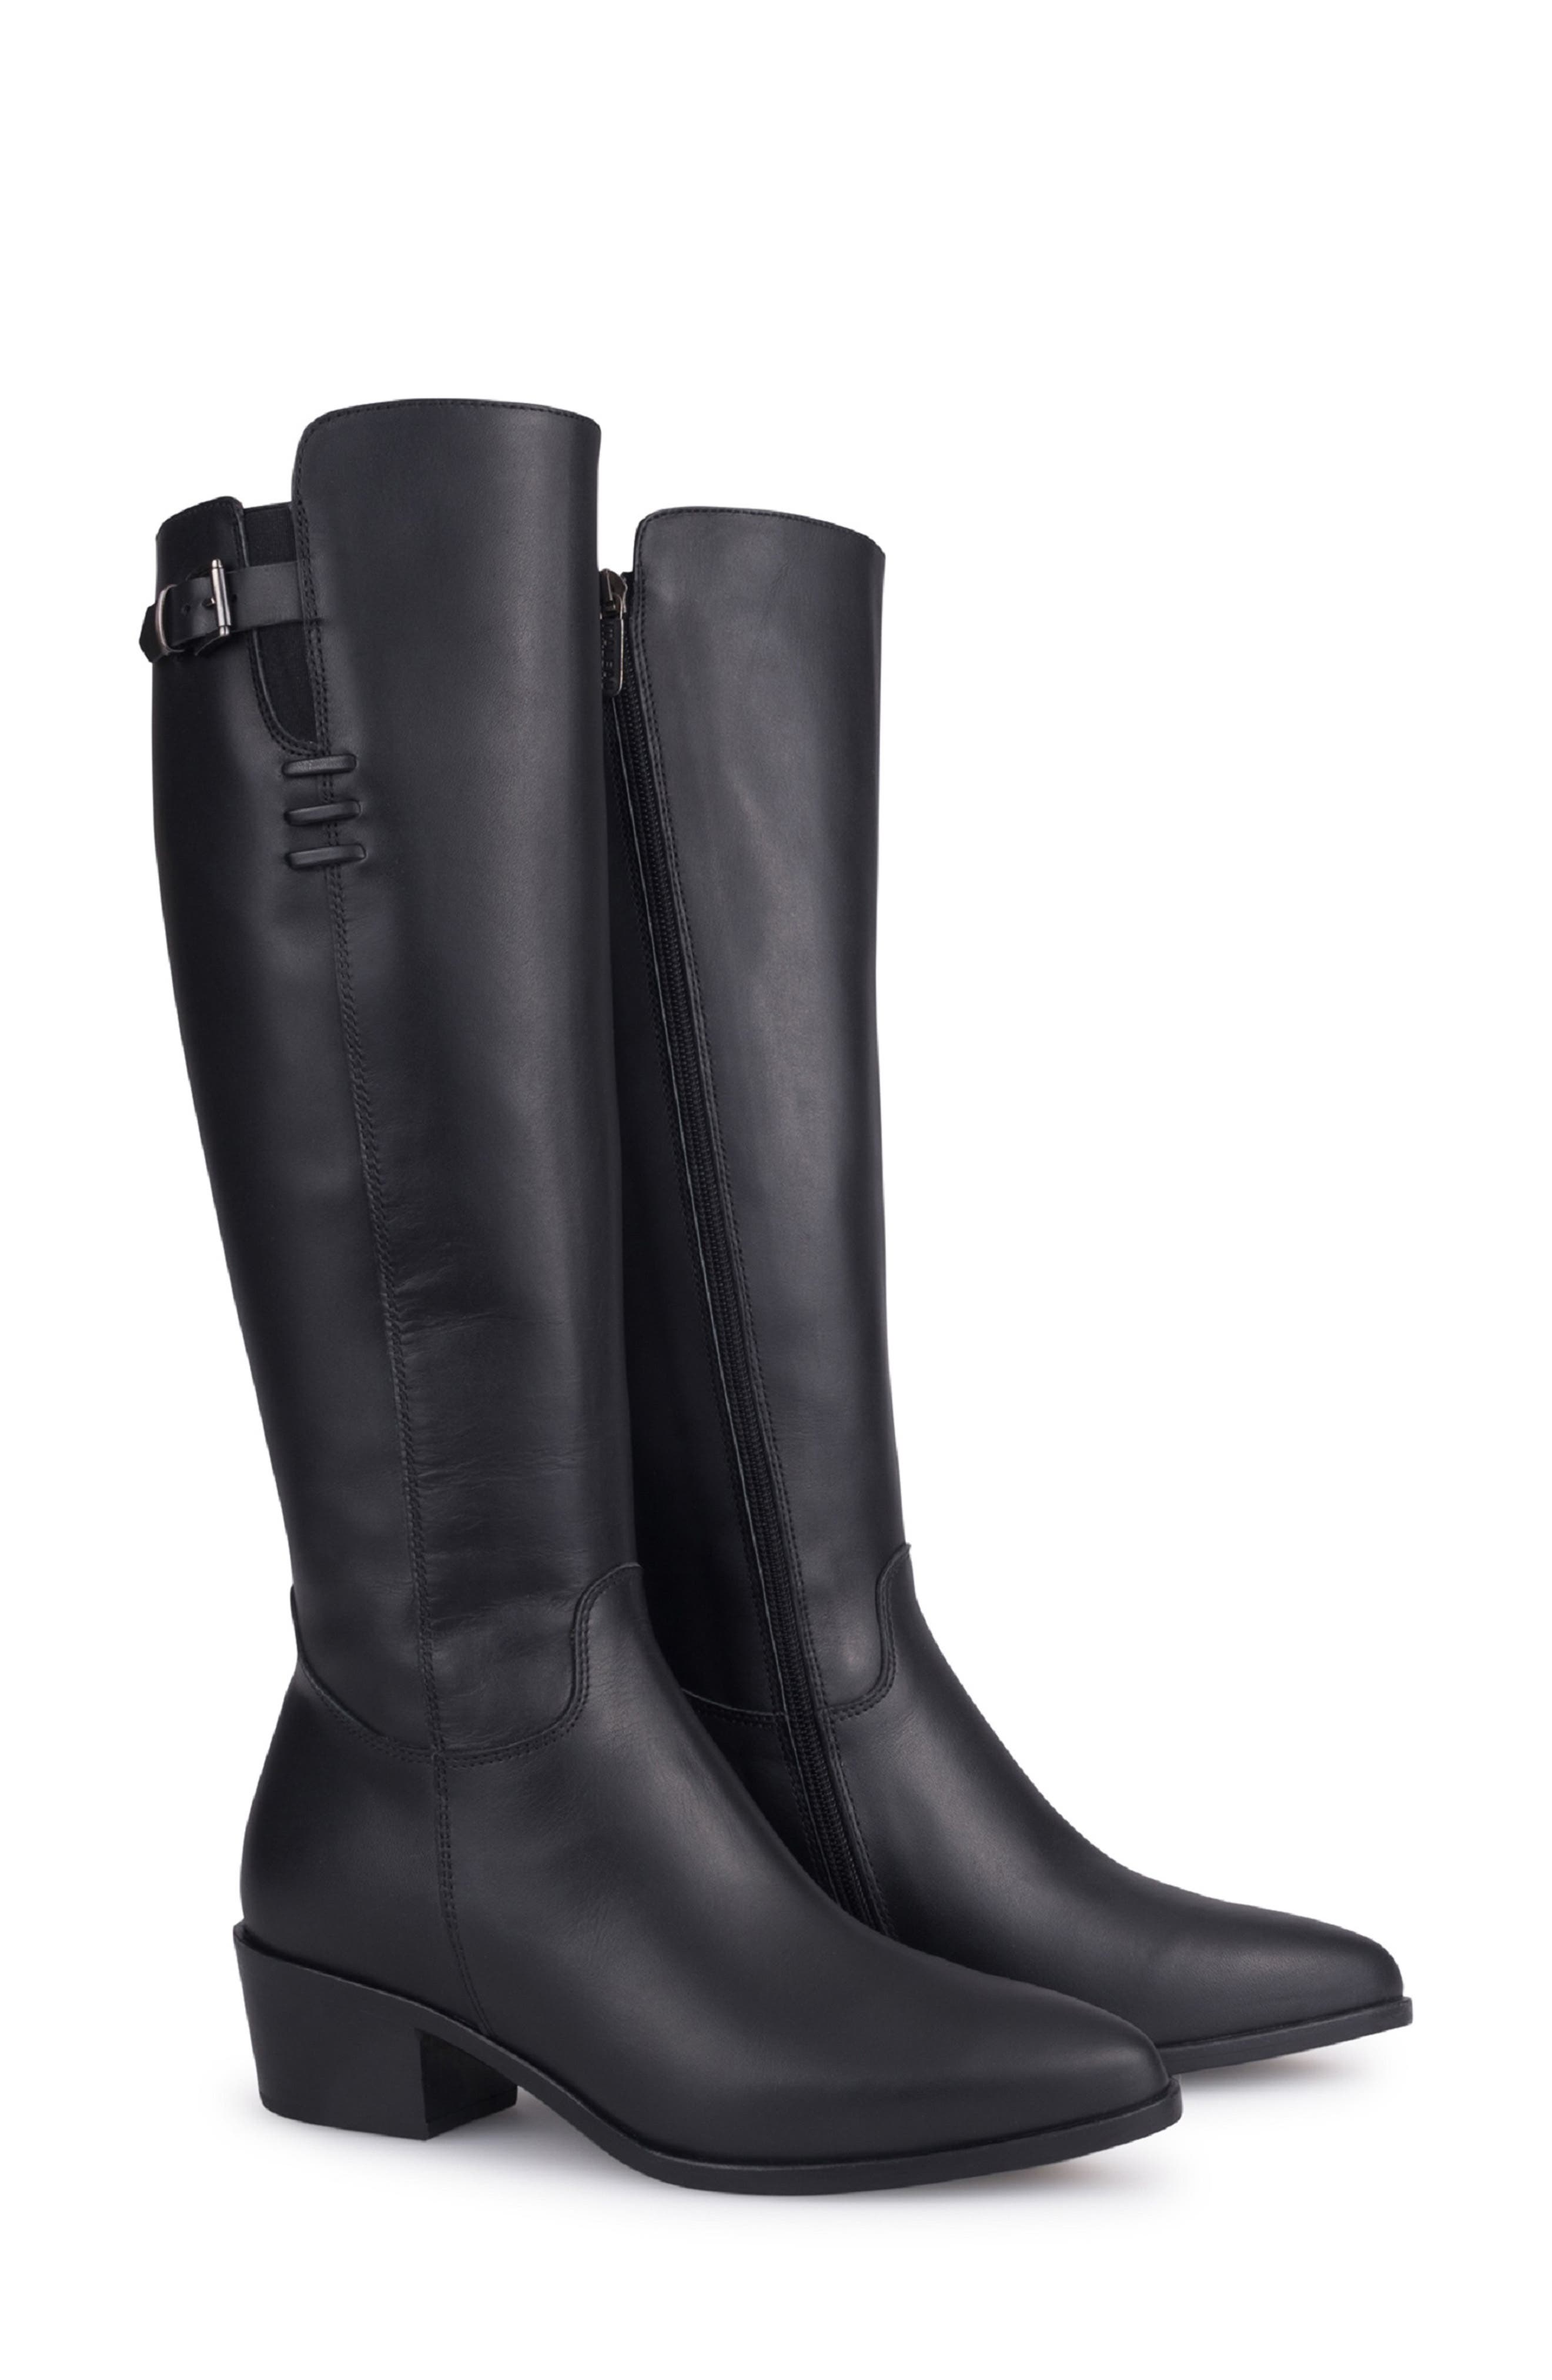 italeau waterproof boots